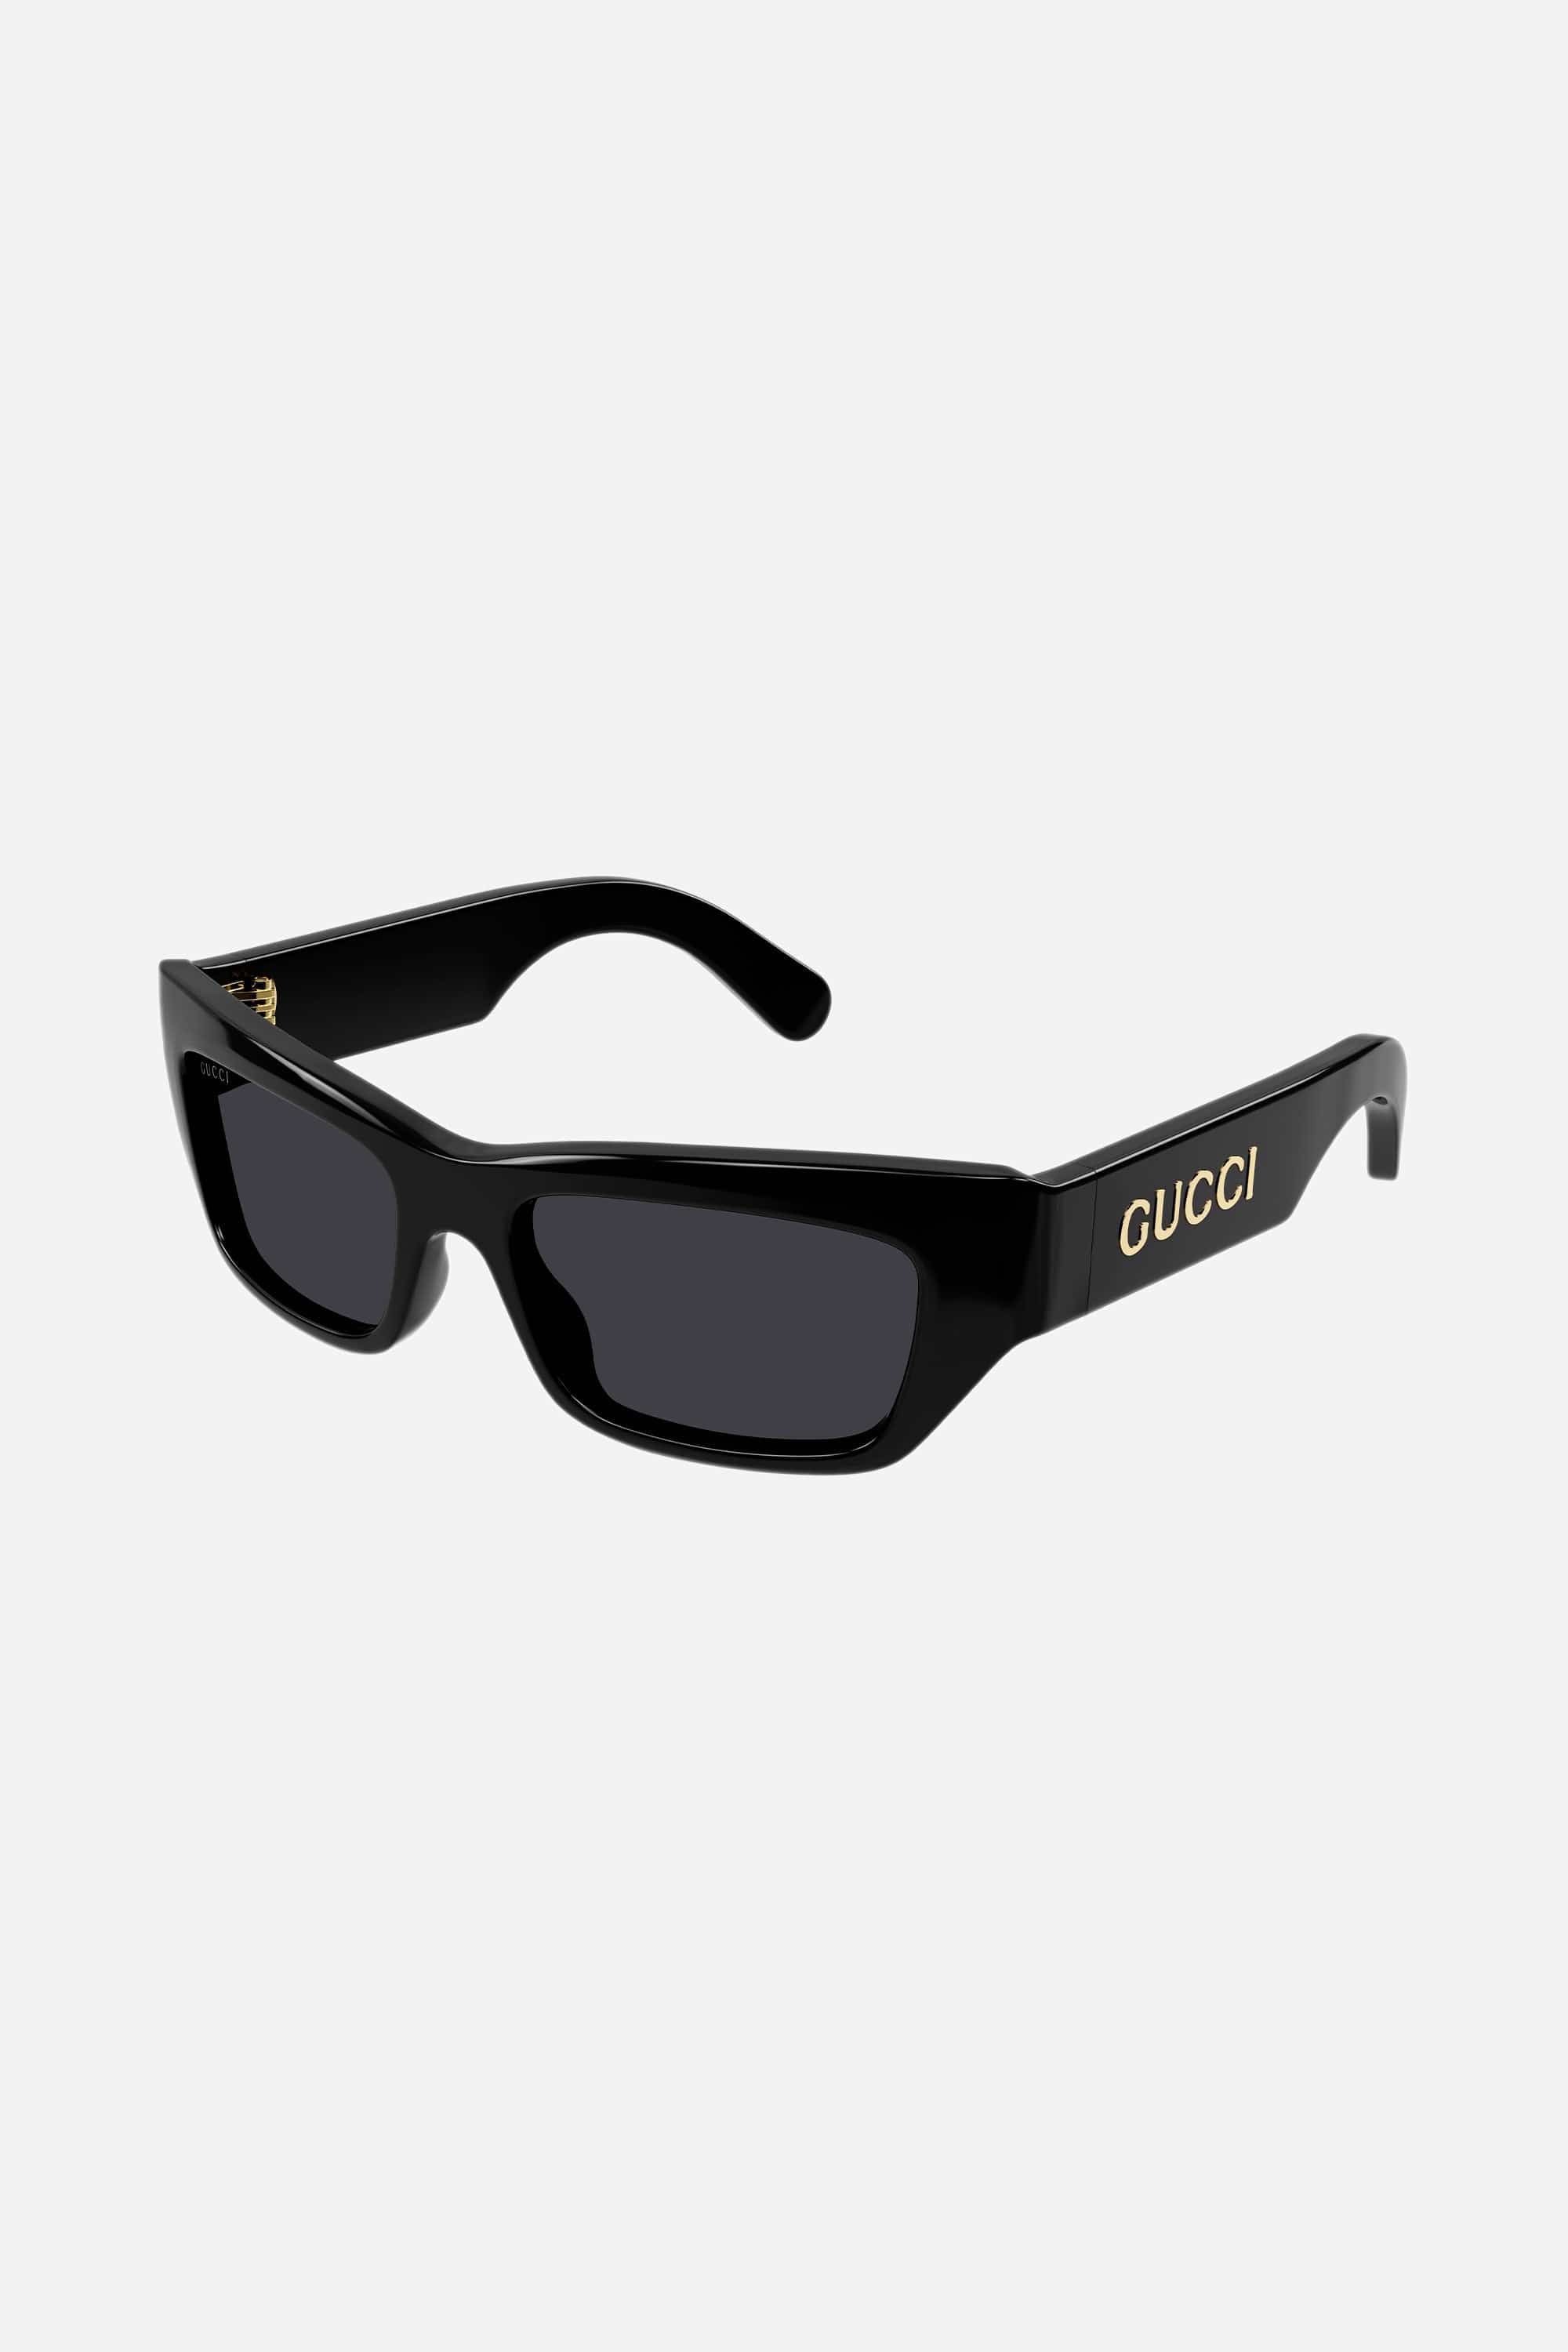 Gucci black runway wrap sunglasses - Eyewear Club